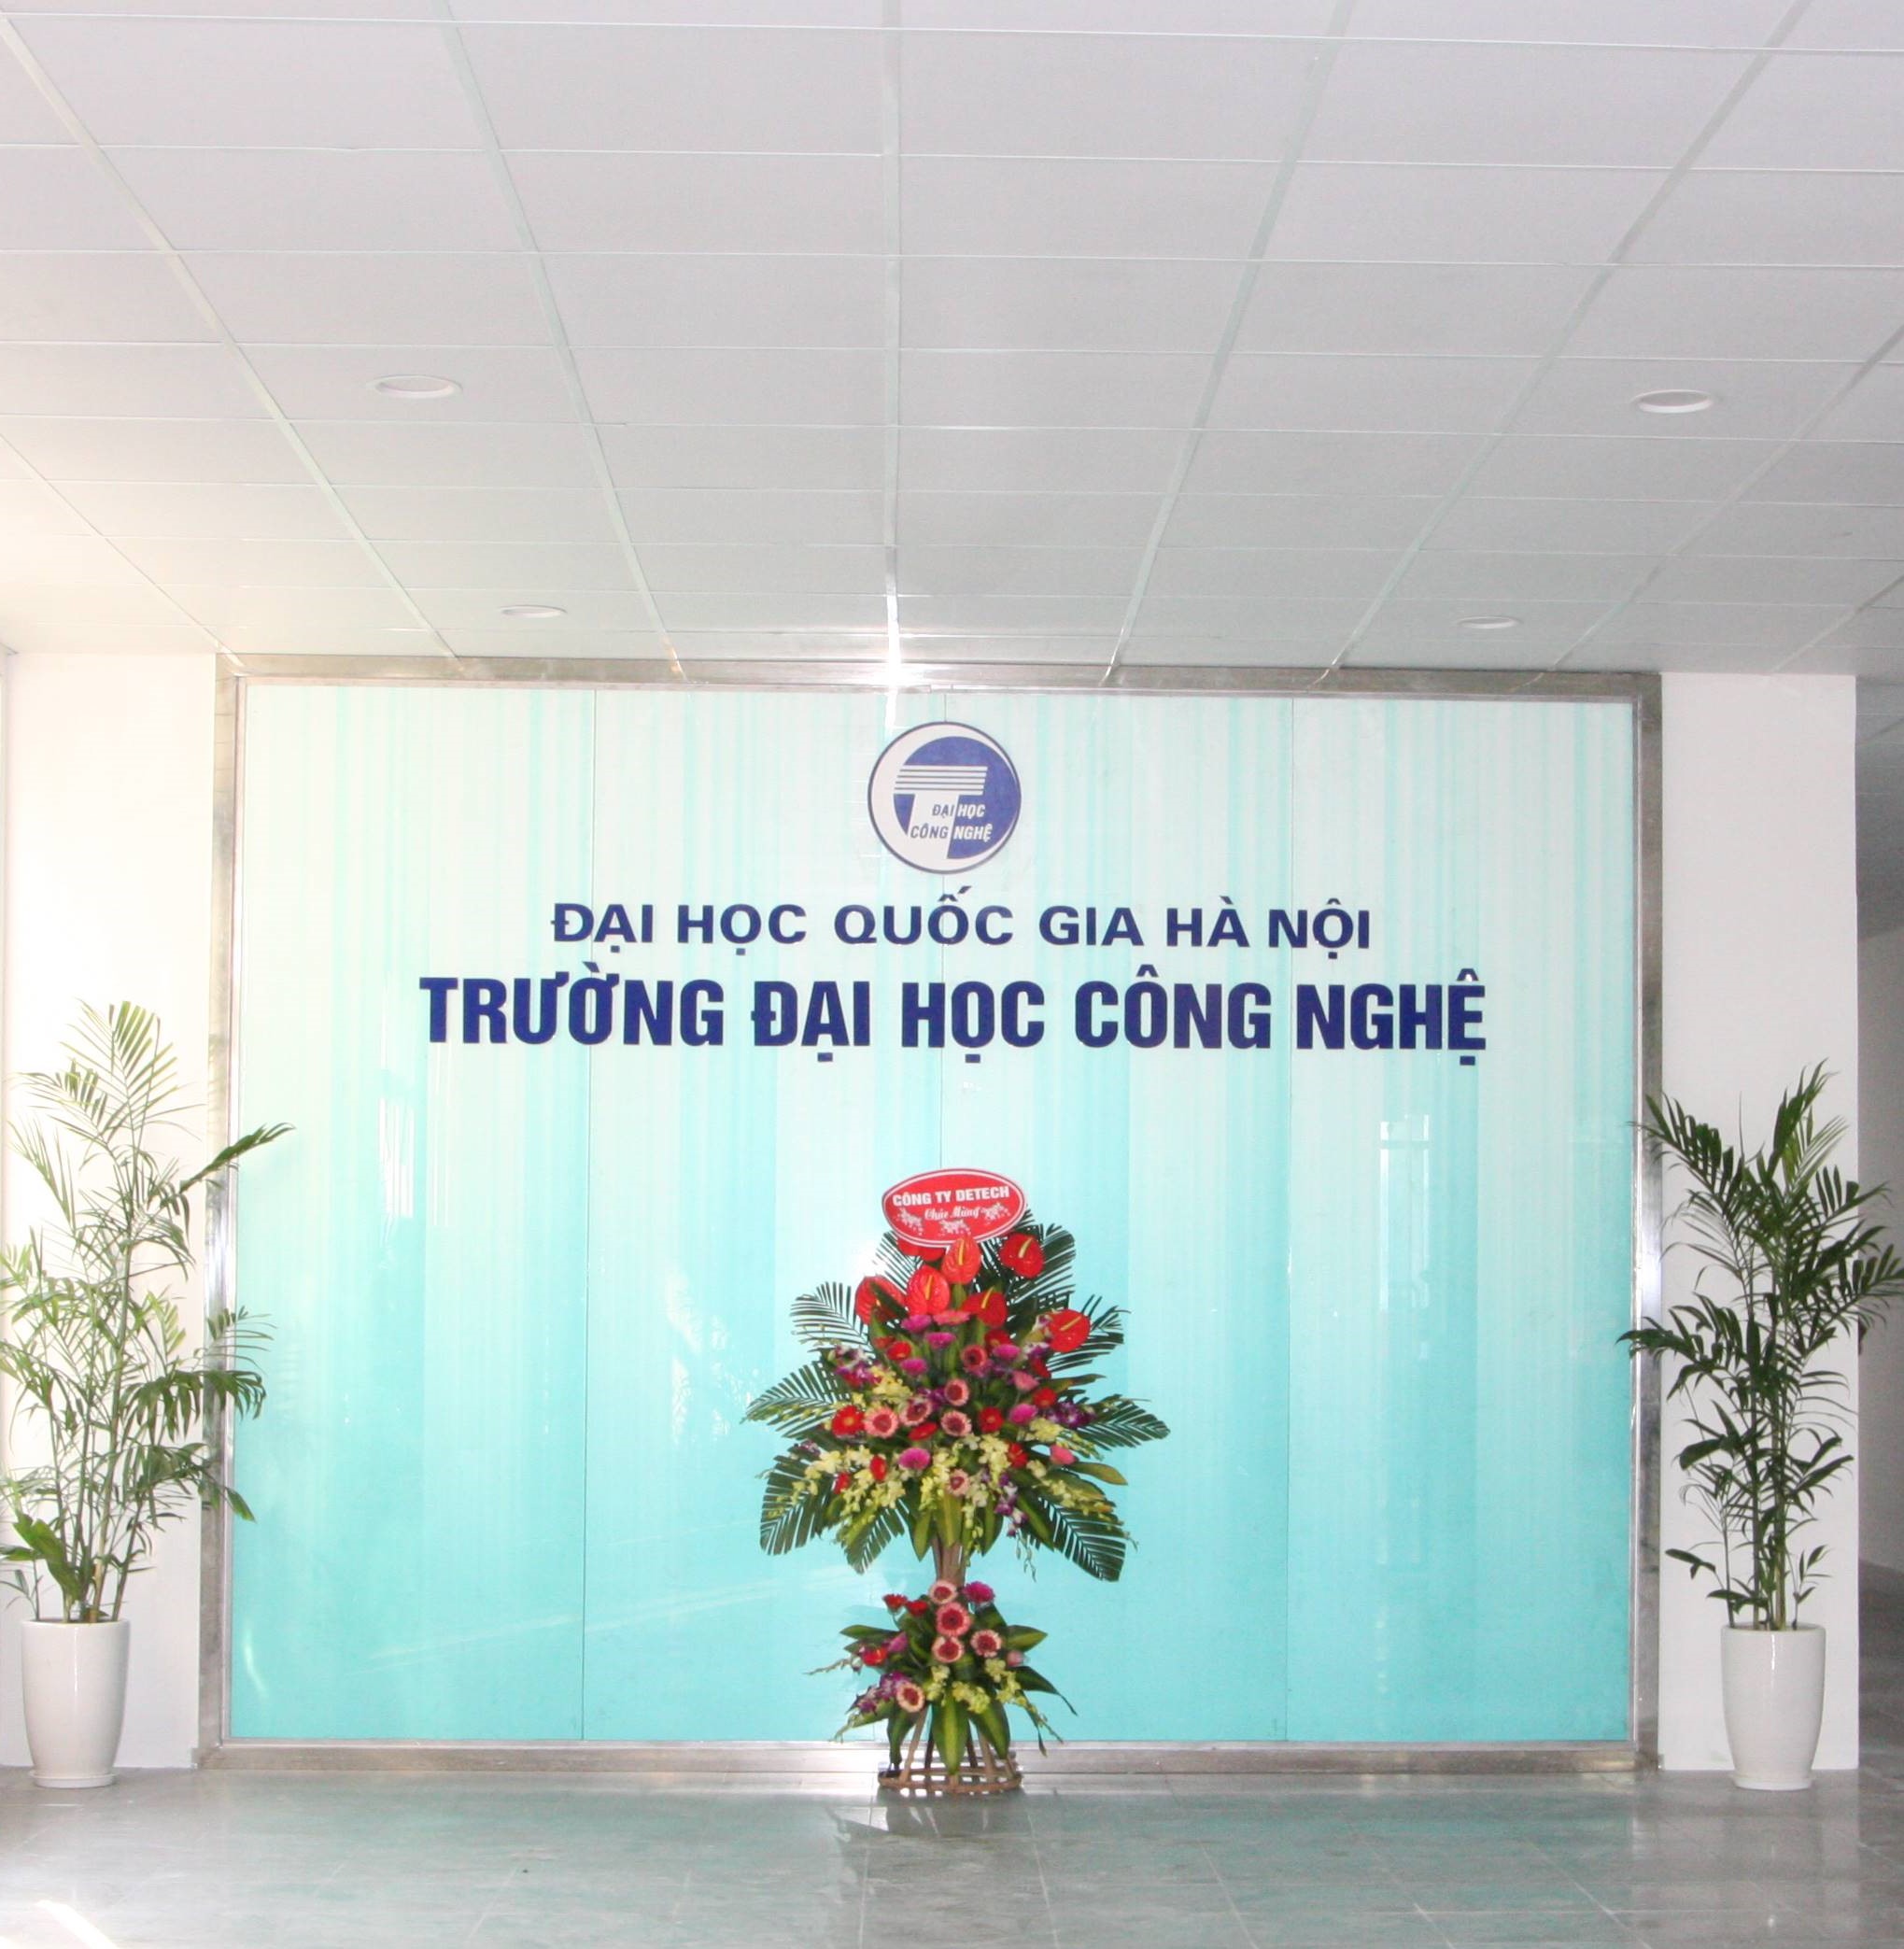 Top 7 trường đại học công nghệ thông tin tốt nhất tại Việt Nam - Ảnh 7